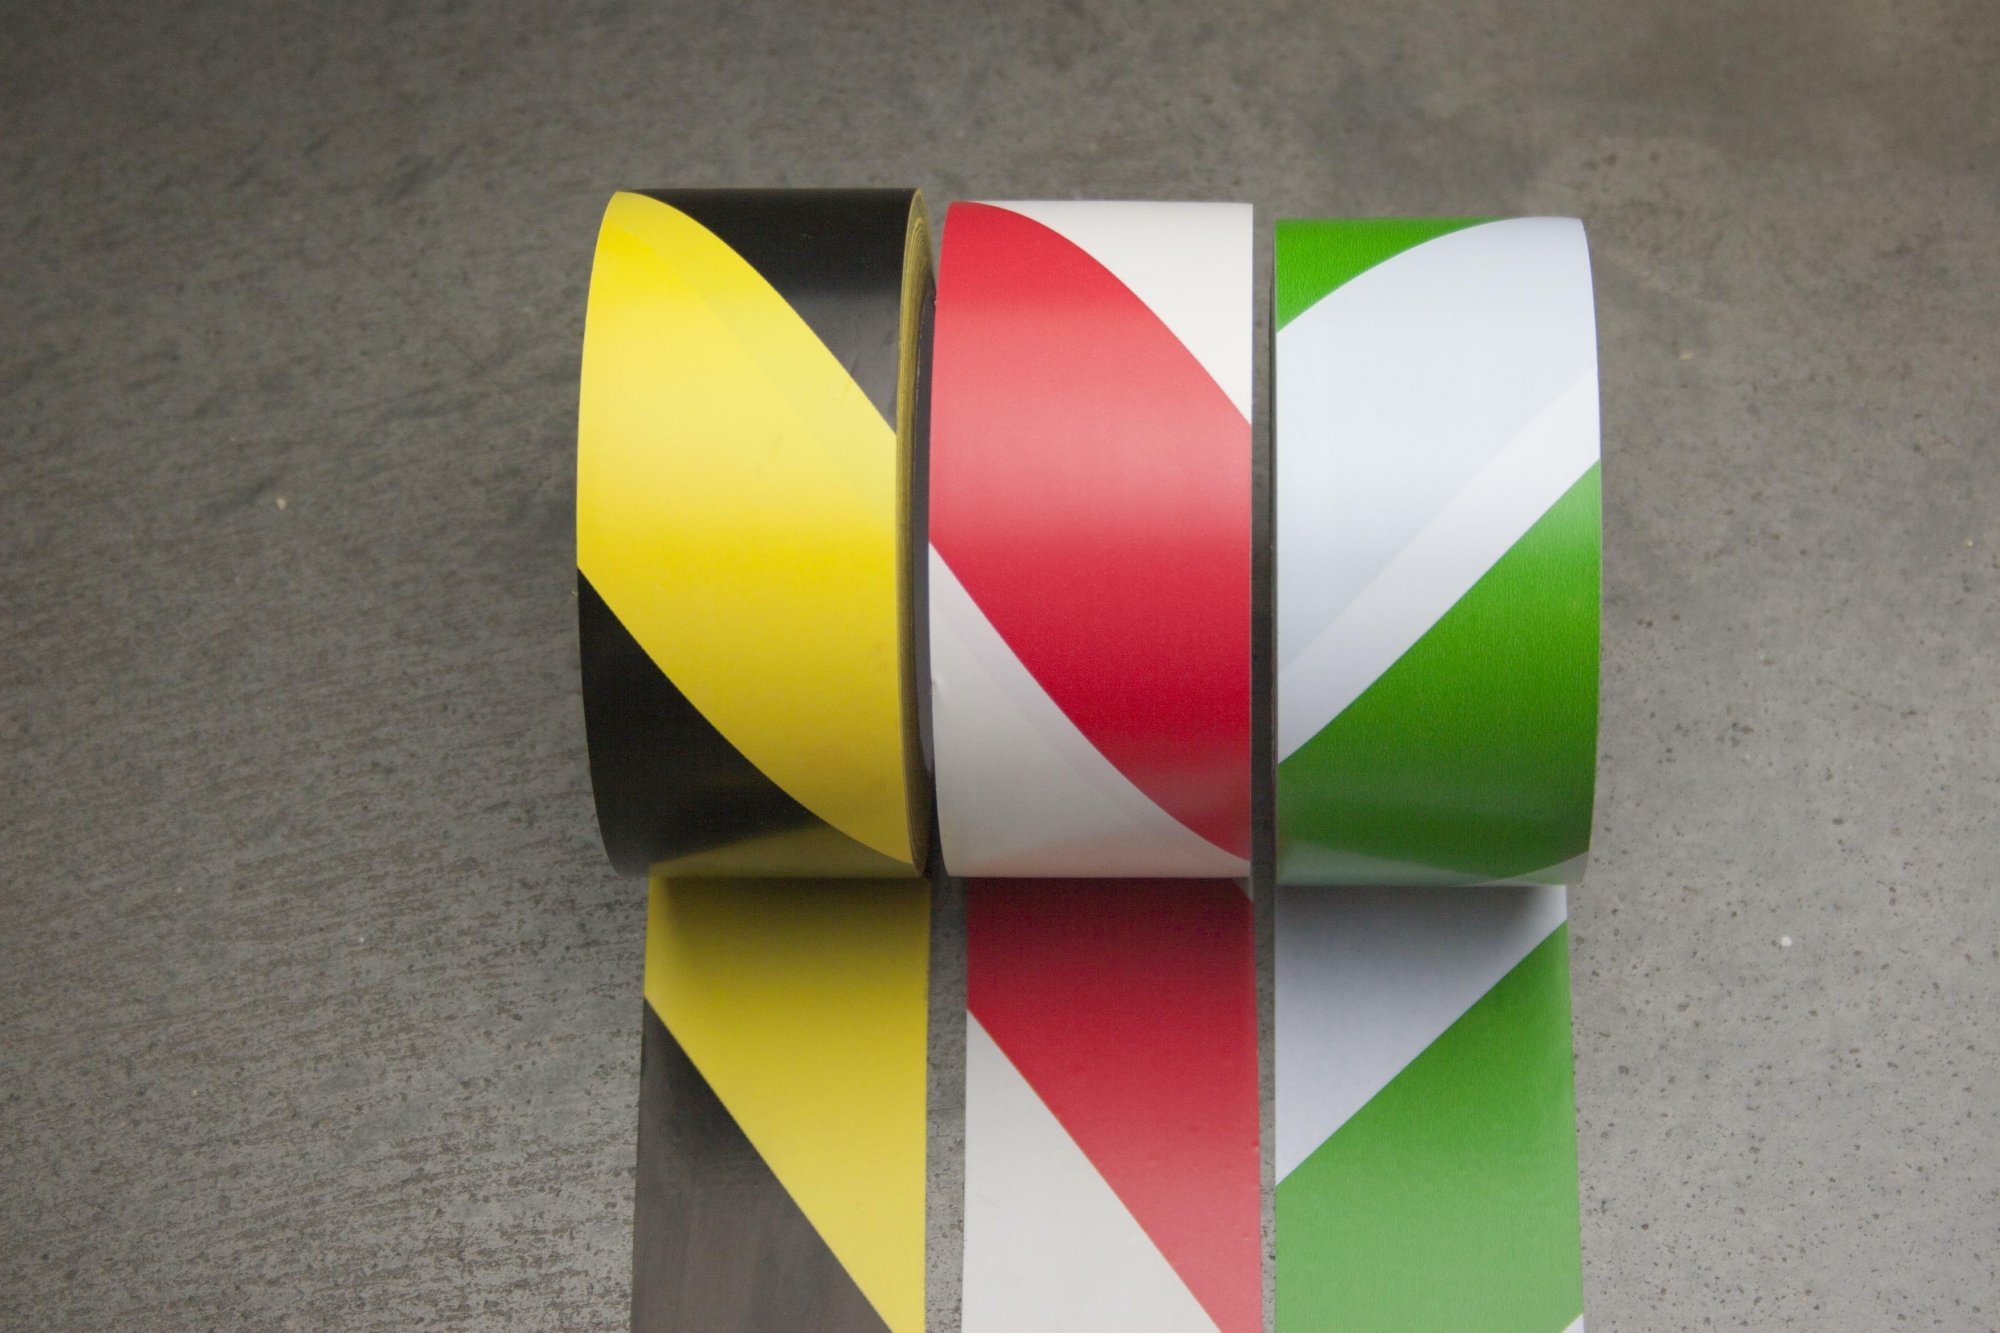 djois podlahová označovací páska Safety, 50 mm x 33 m, žlutá/černá, 1 ks